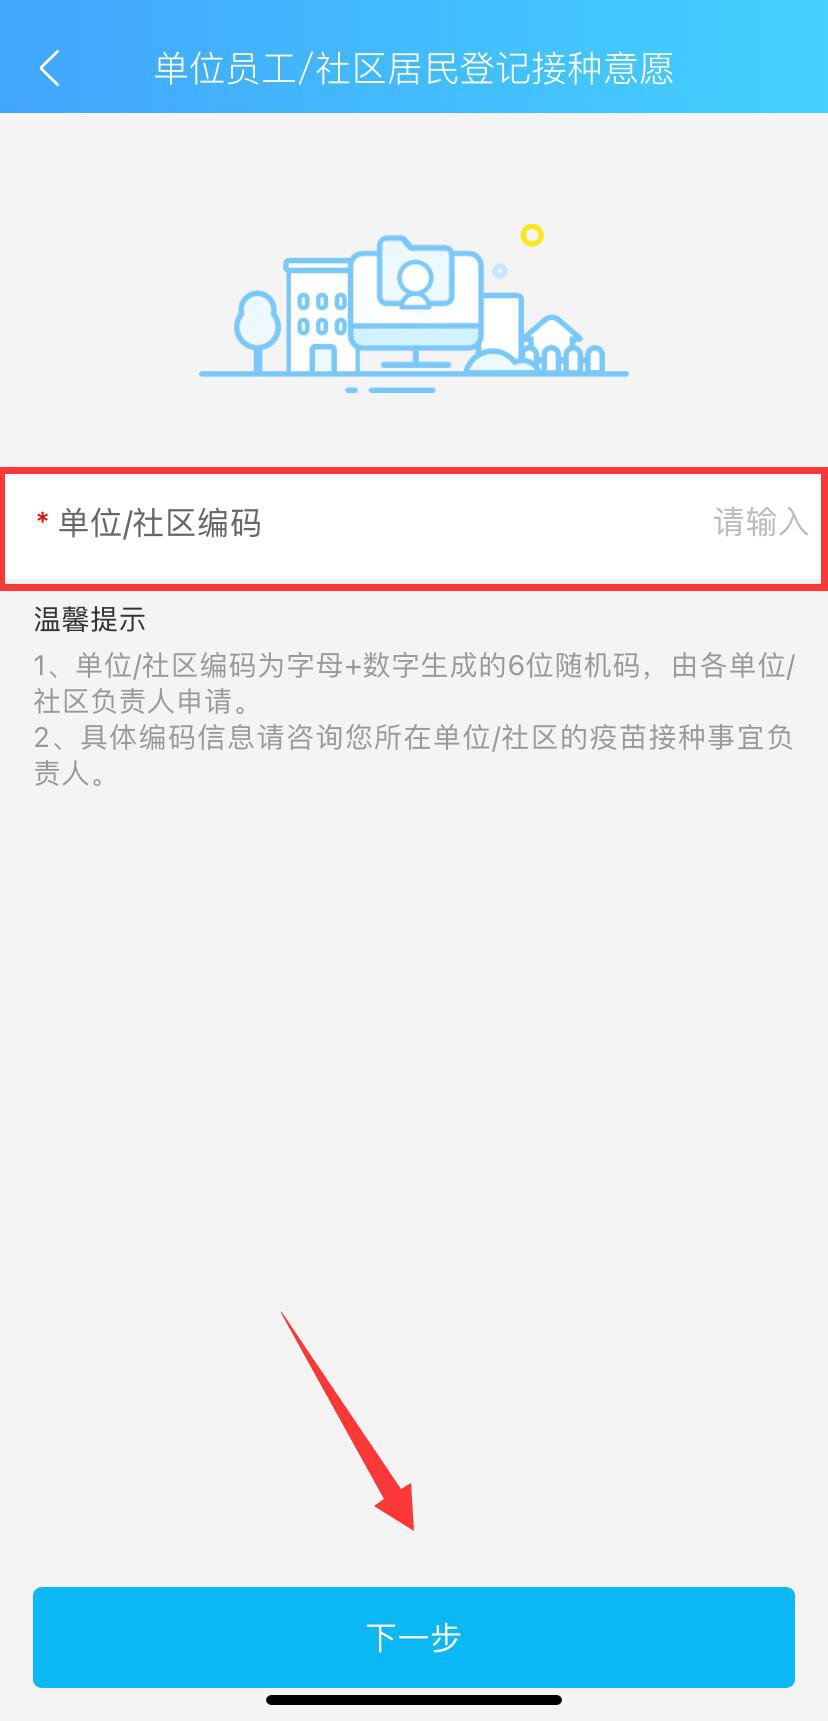 上海虹口区新冠疫苗社区编码一览表